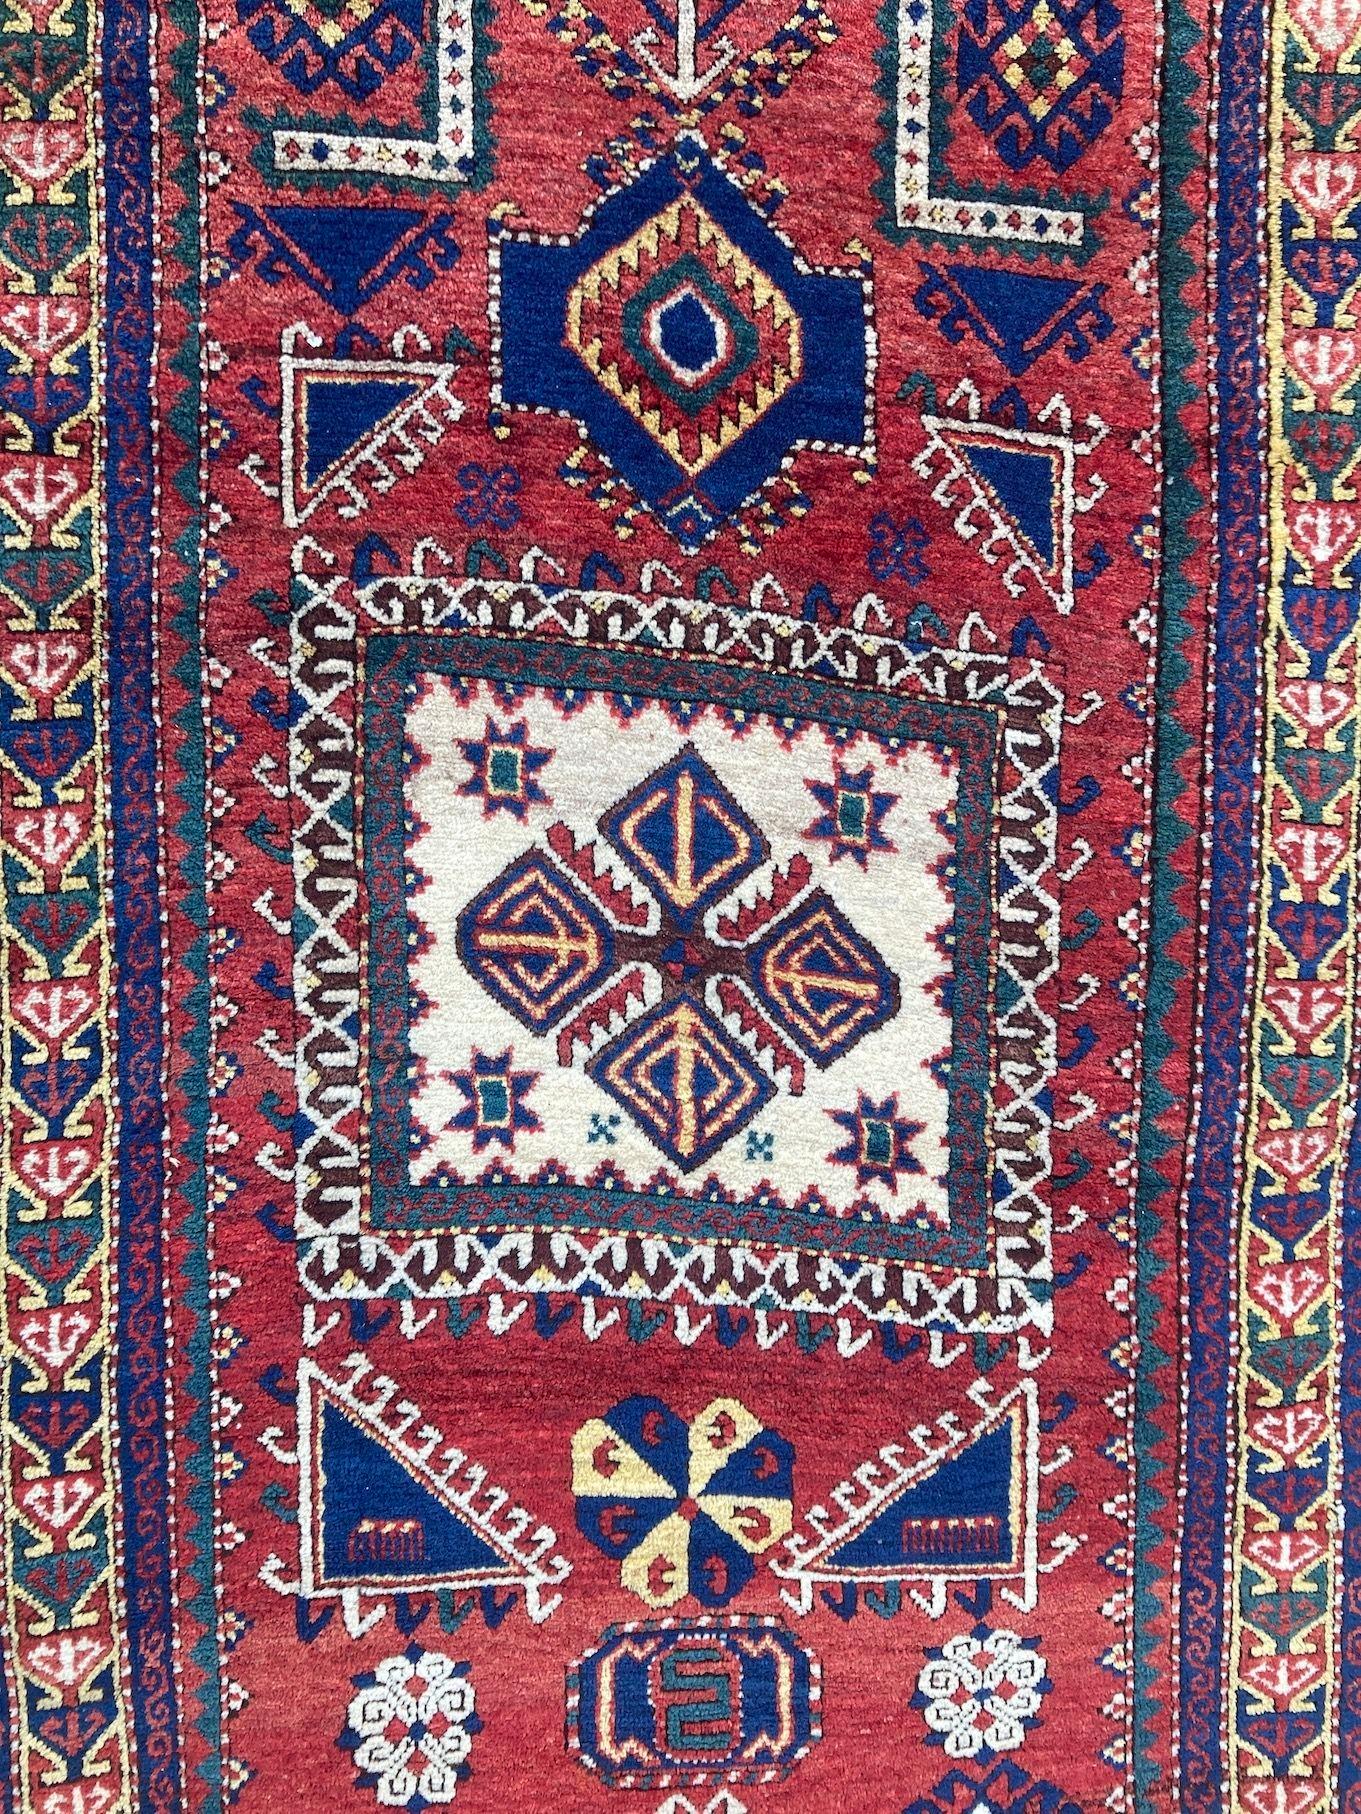 Antique Caucasian Fachralo Kazak Prayer Rug 2.48m x 1.30m For Sale 8